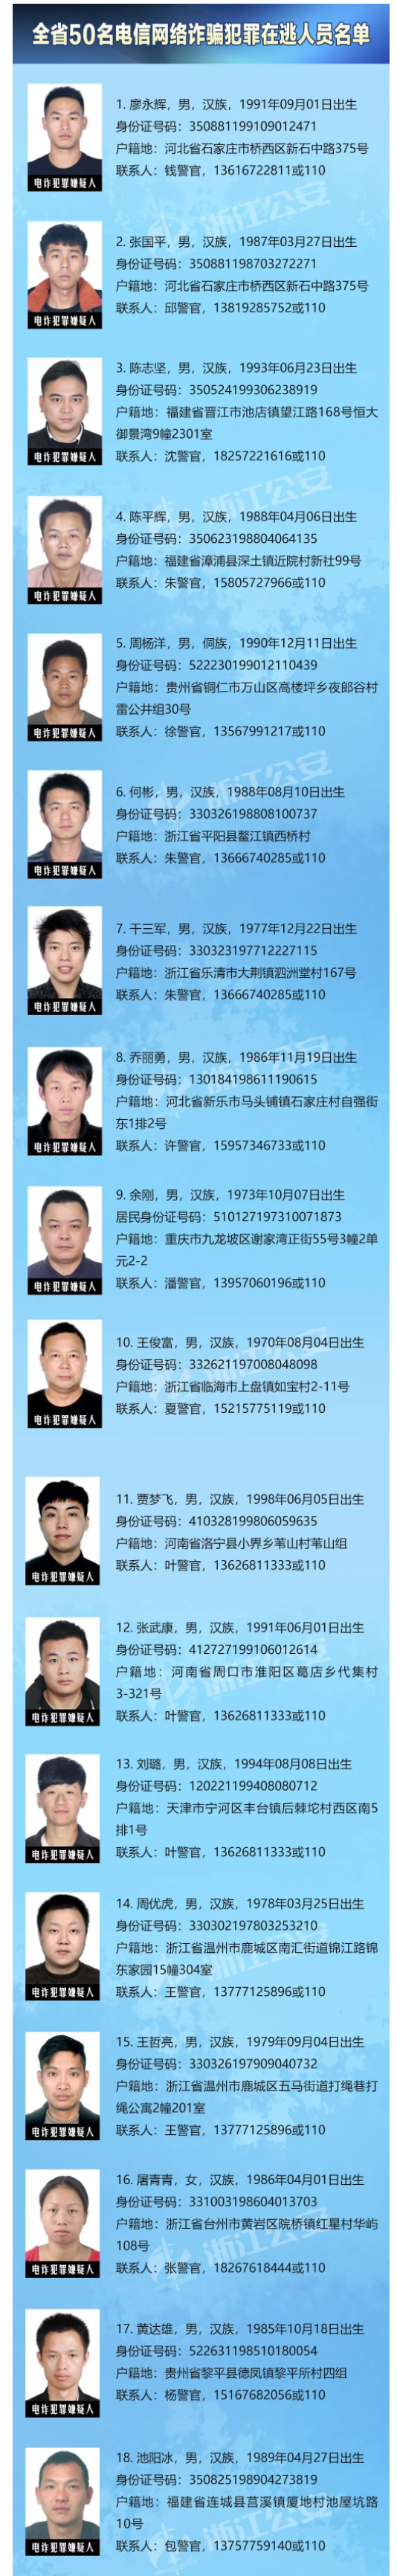 浙江省公安厅公开通缉50名涉电信诈骗在逃人员